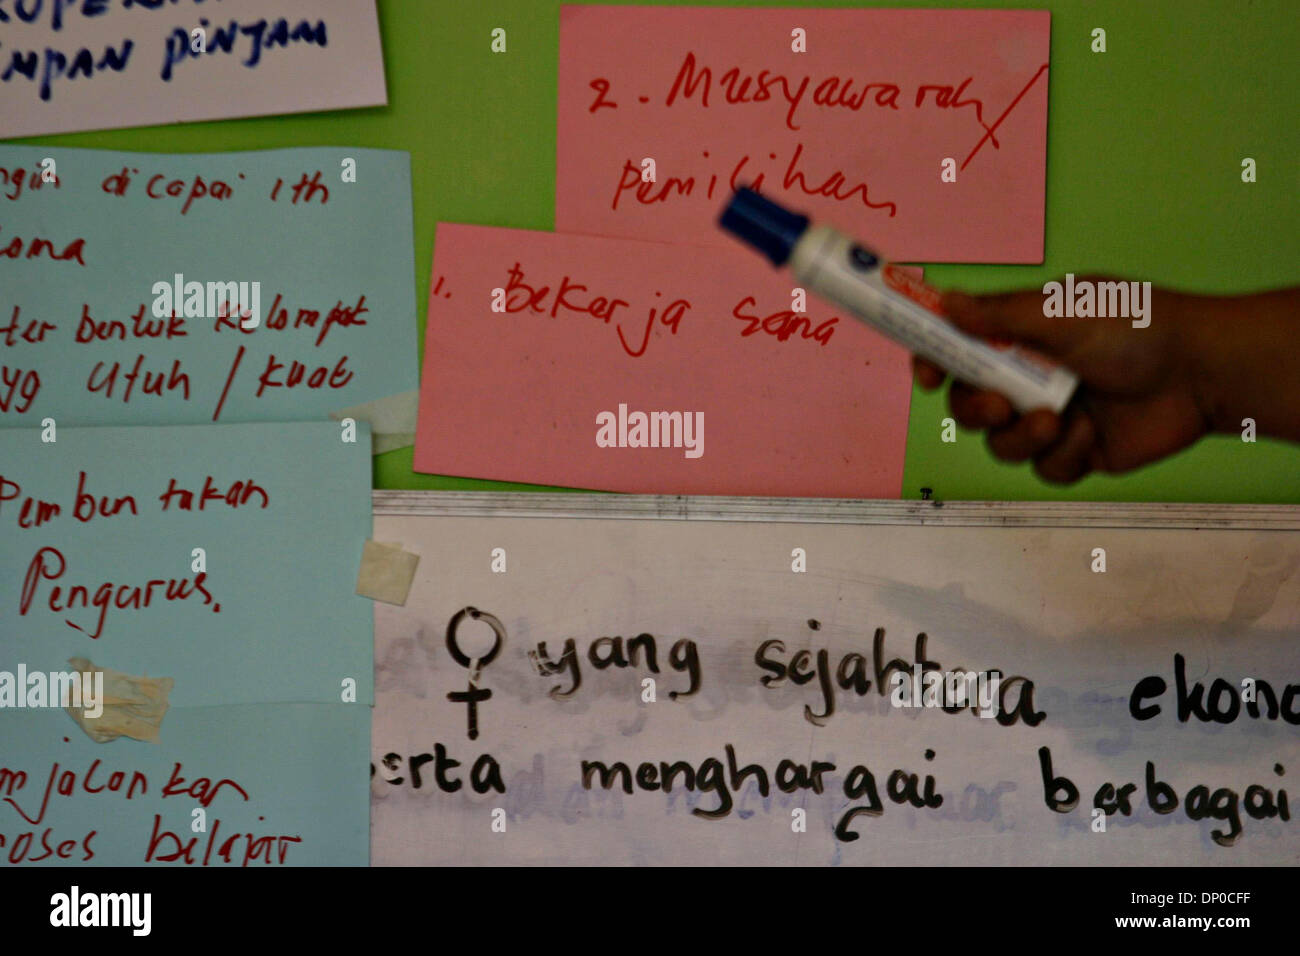 Mar 08, 2006 ; Jakarta, Indonésie ; matériel éducatif couverts à l'école des femmes Ciliwung est illustré à l'aide d'exemples tirés de la vie quotidienne, et communiquées à l'aide d'un langage simple délibérément à des séances de groupe. L'école, fondé en mai 2002, est situé dans une étroite ruelle bondée, Kampong non loin de la rivière Ciliwung. Le programme comprend, entre autres sujets, de l'eq Banque D'Images